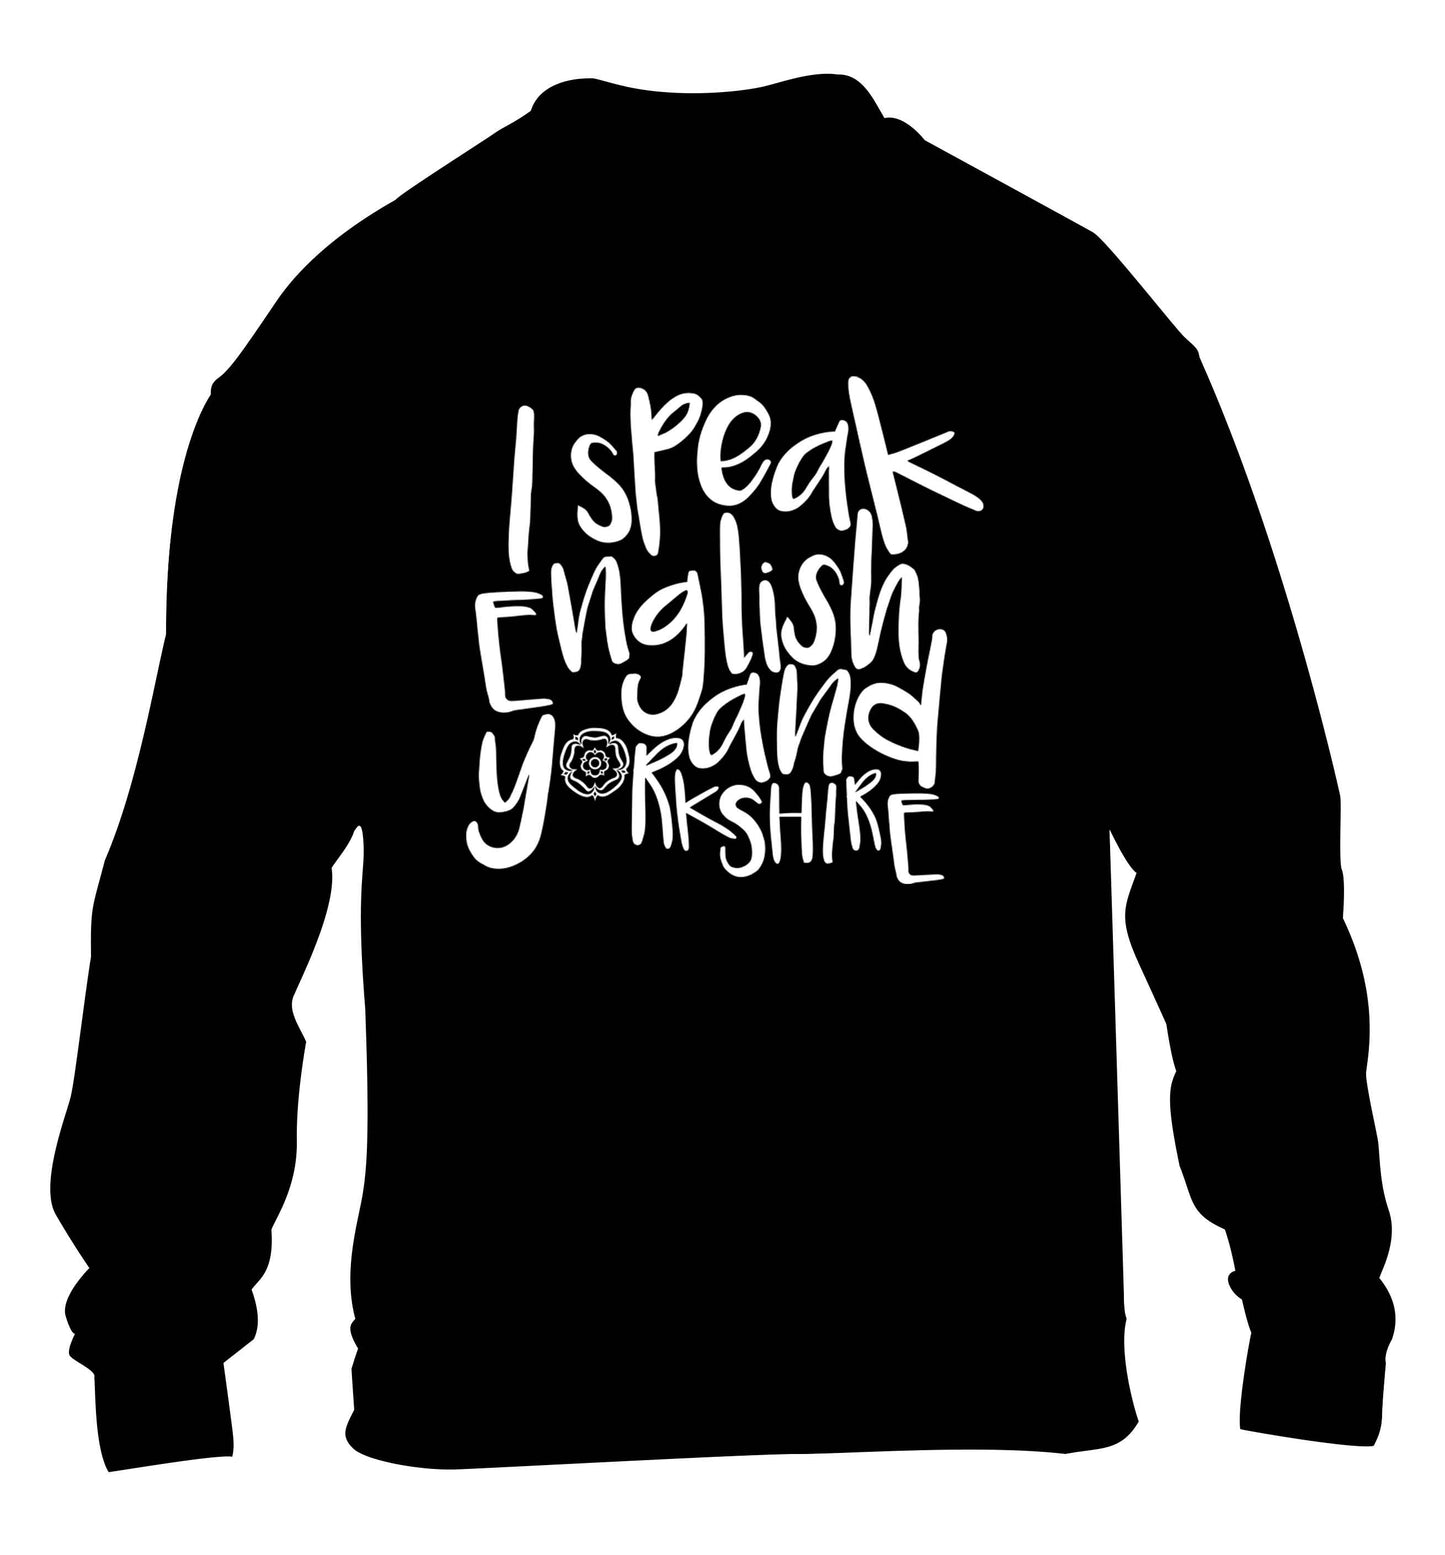 I speak English and Yorkshire children's black sweater 12-13 Years